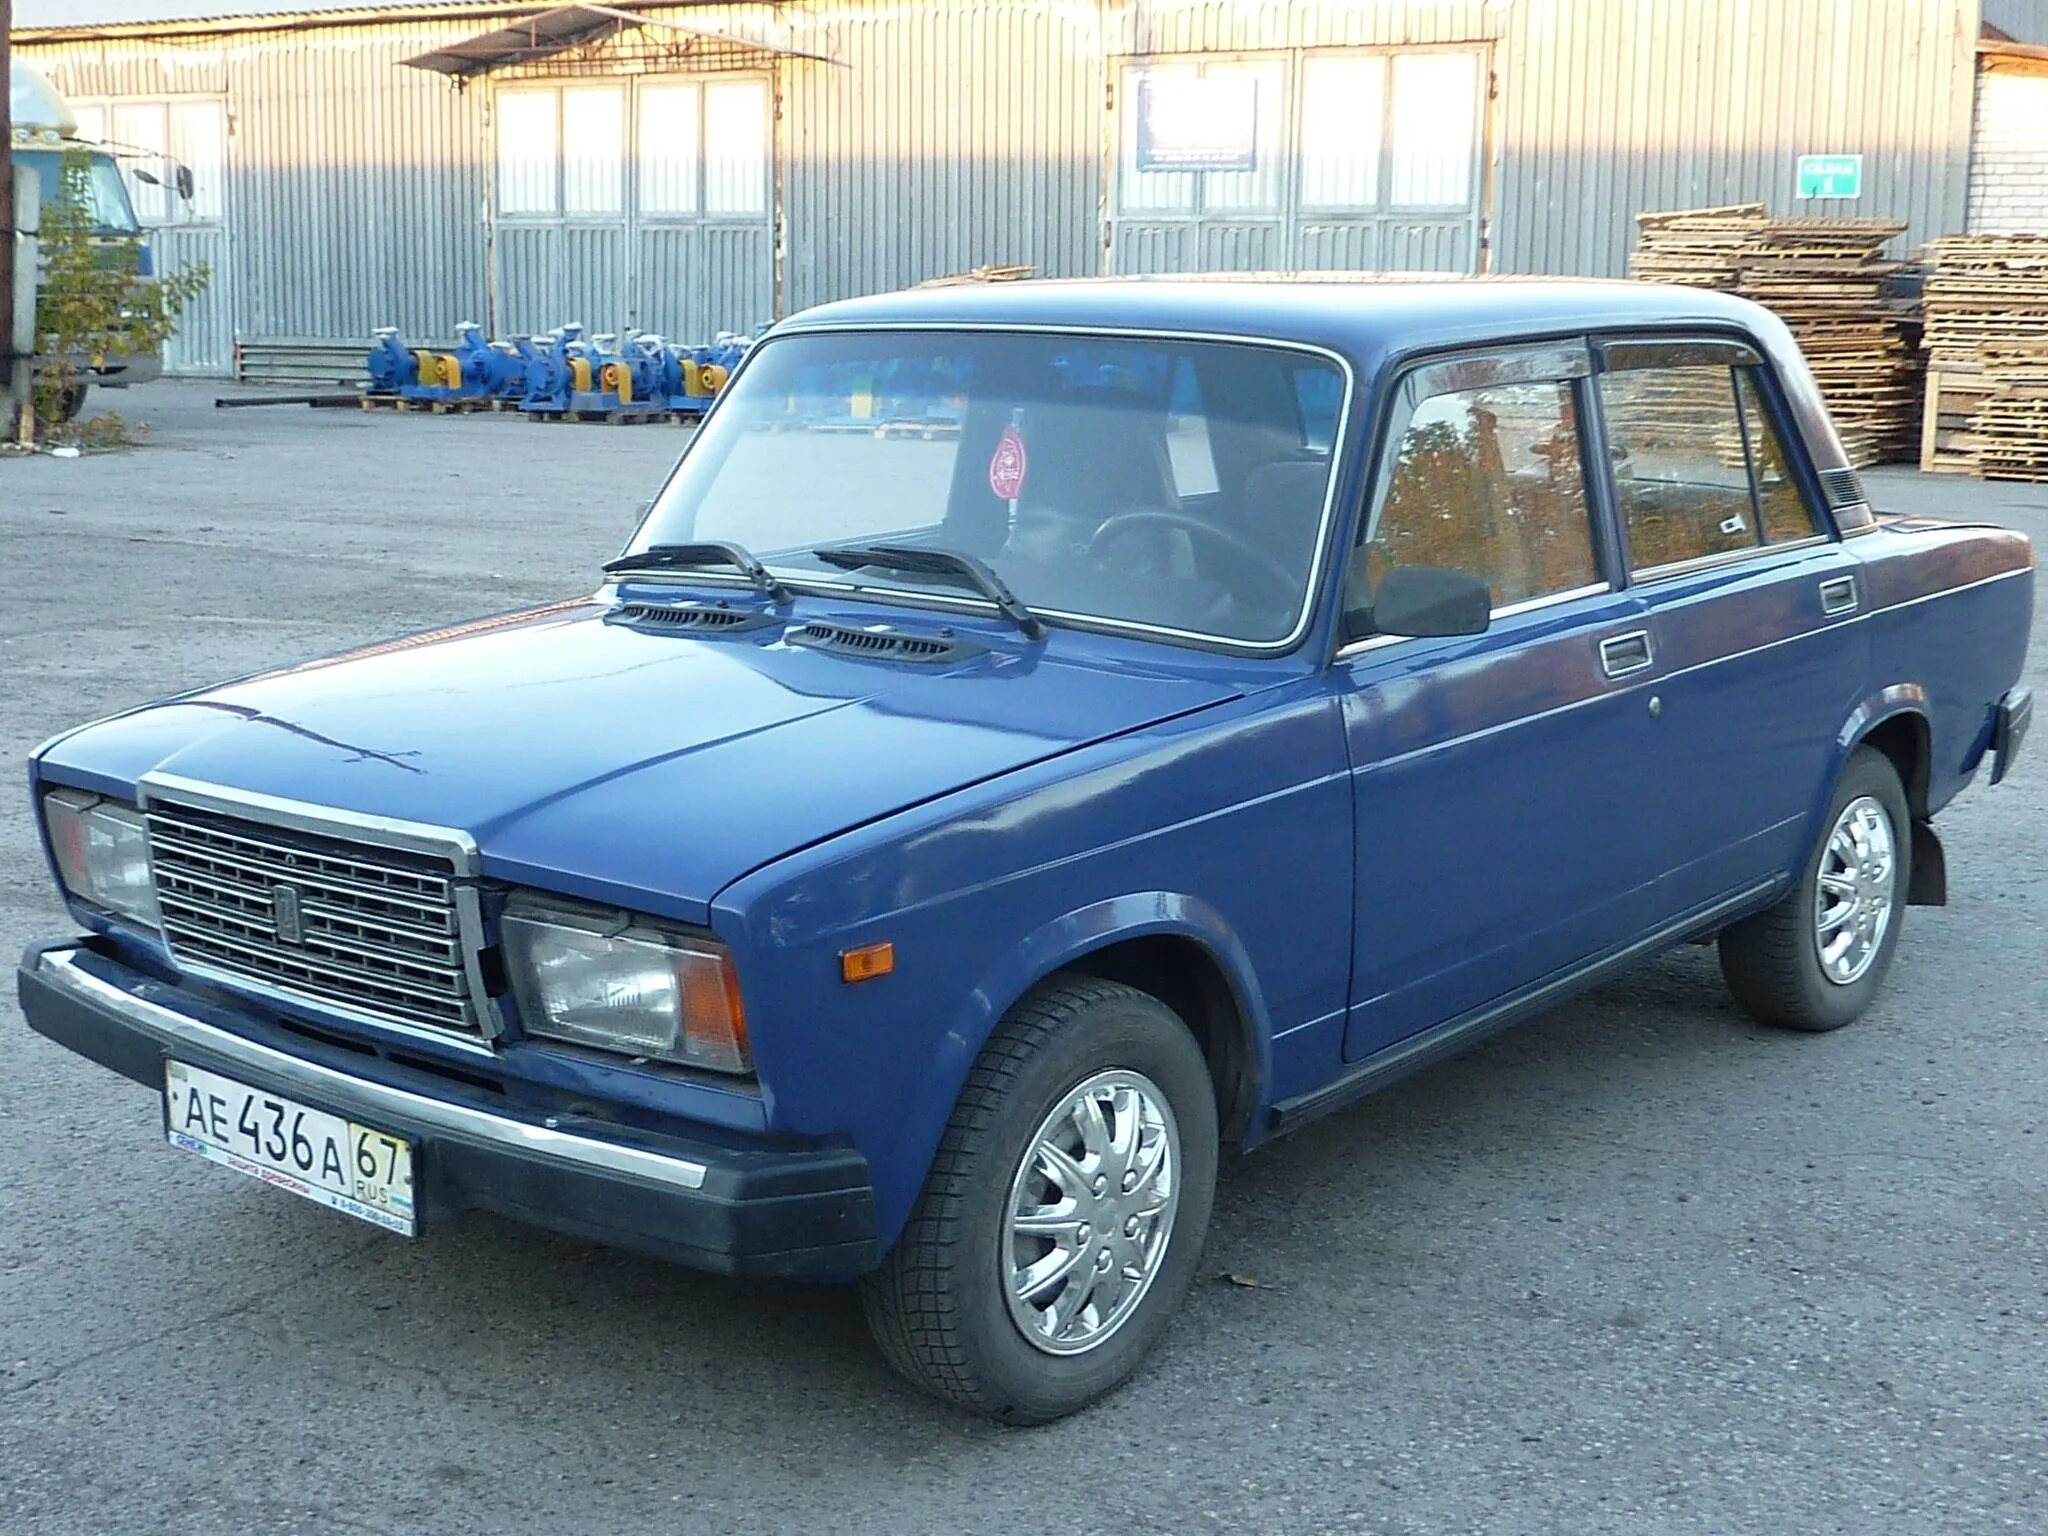 Продажа автомобиля жигули. ВАЗ-2107 «Жигули». Семёрка ВАЗ 2107 голубая. Ваз2107 компакт-кар.